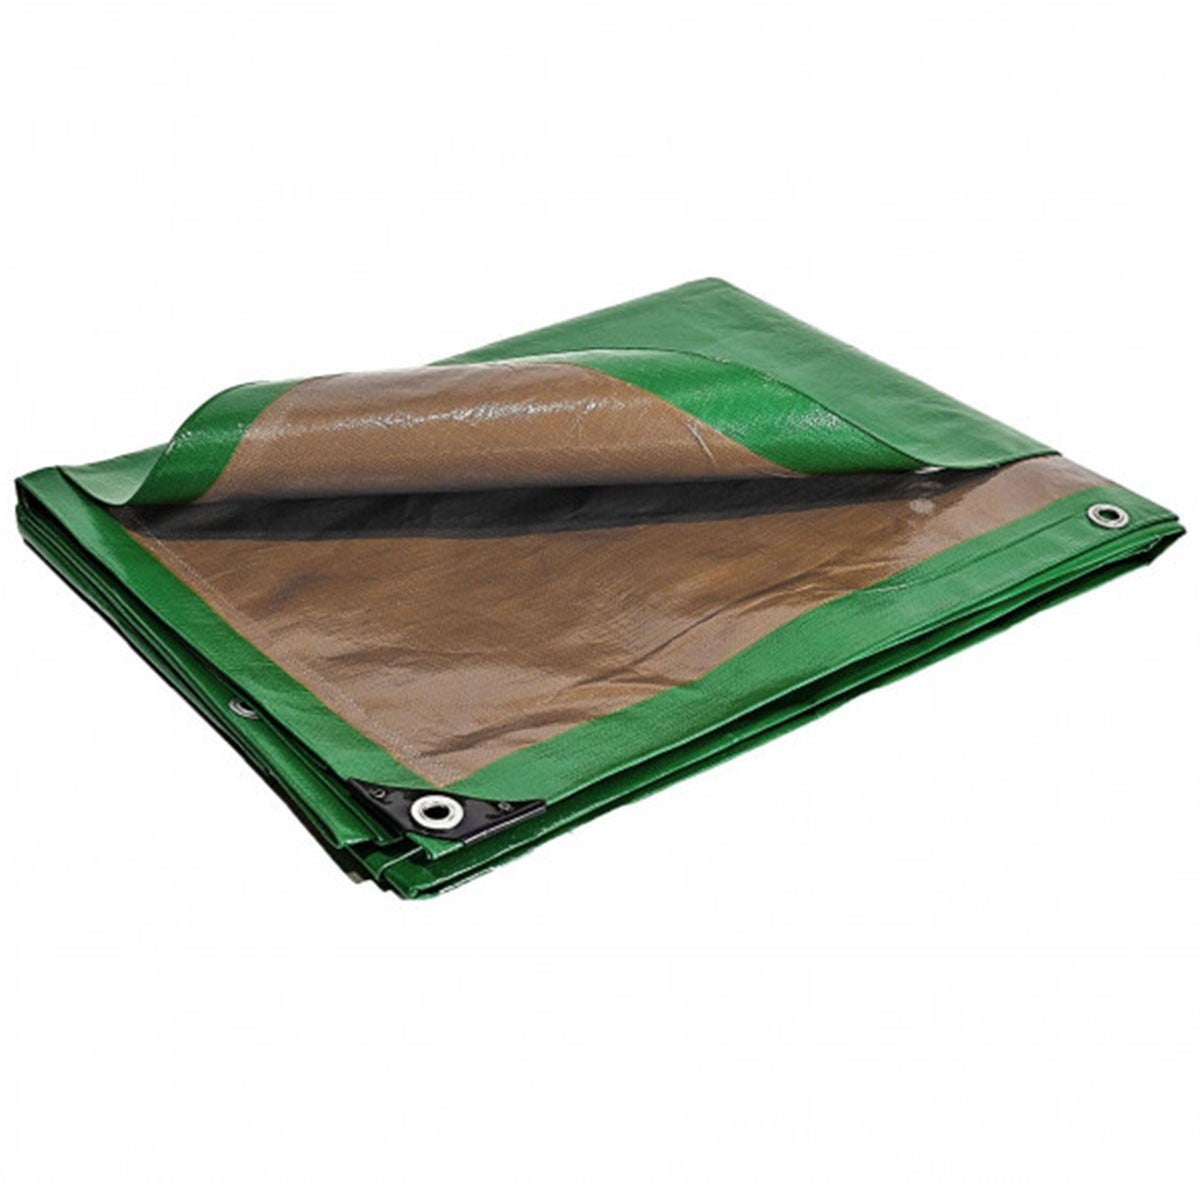 Telo in plastica impermeabile 3x5 m verde e marrone trattato anti-UV  250g/m² - telo protettivo in polietilene di alta qualità